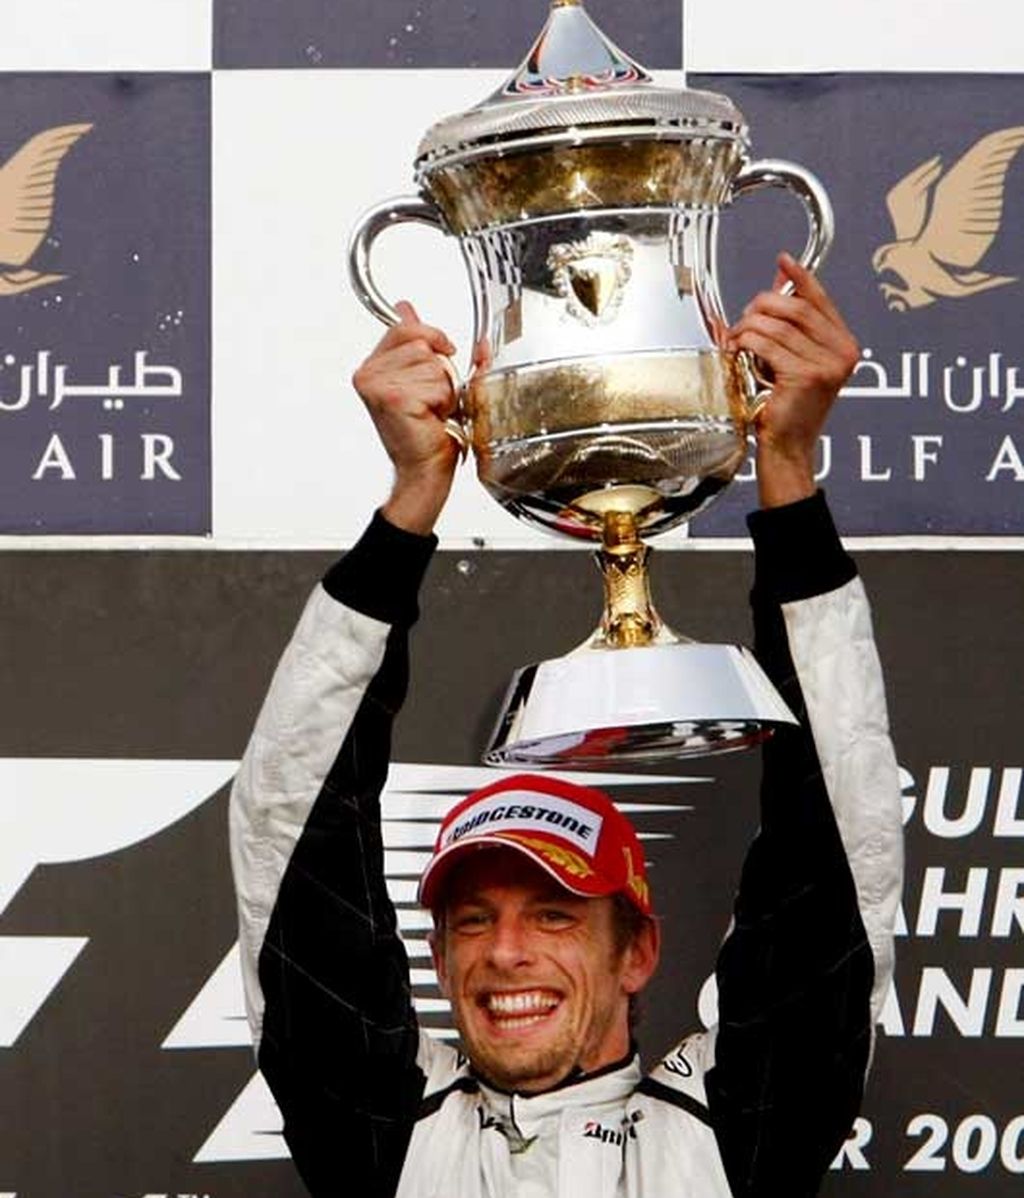 Gran Premio de Bahrein